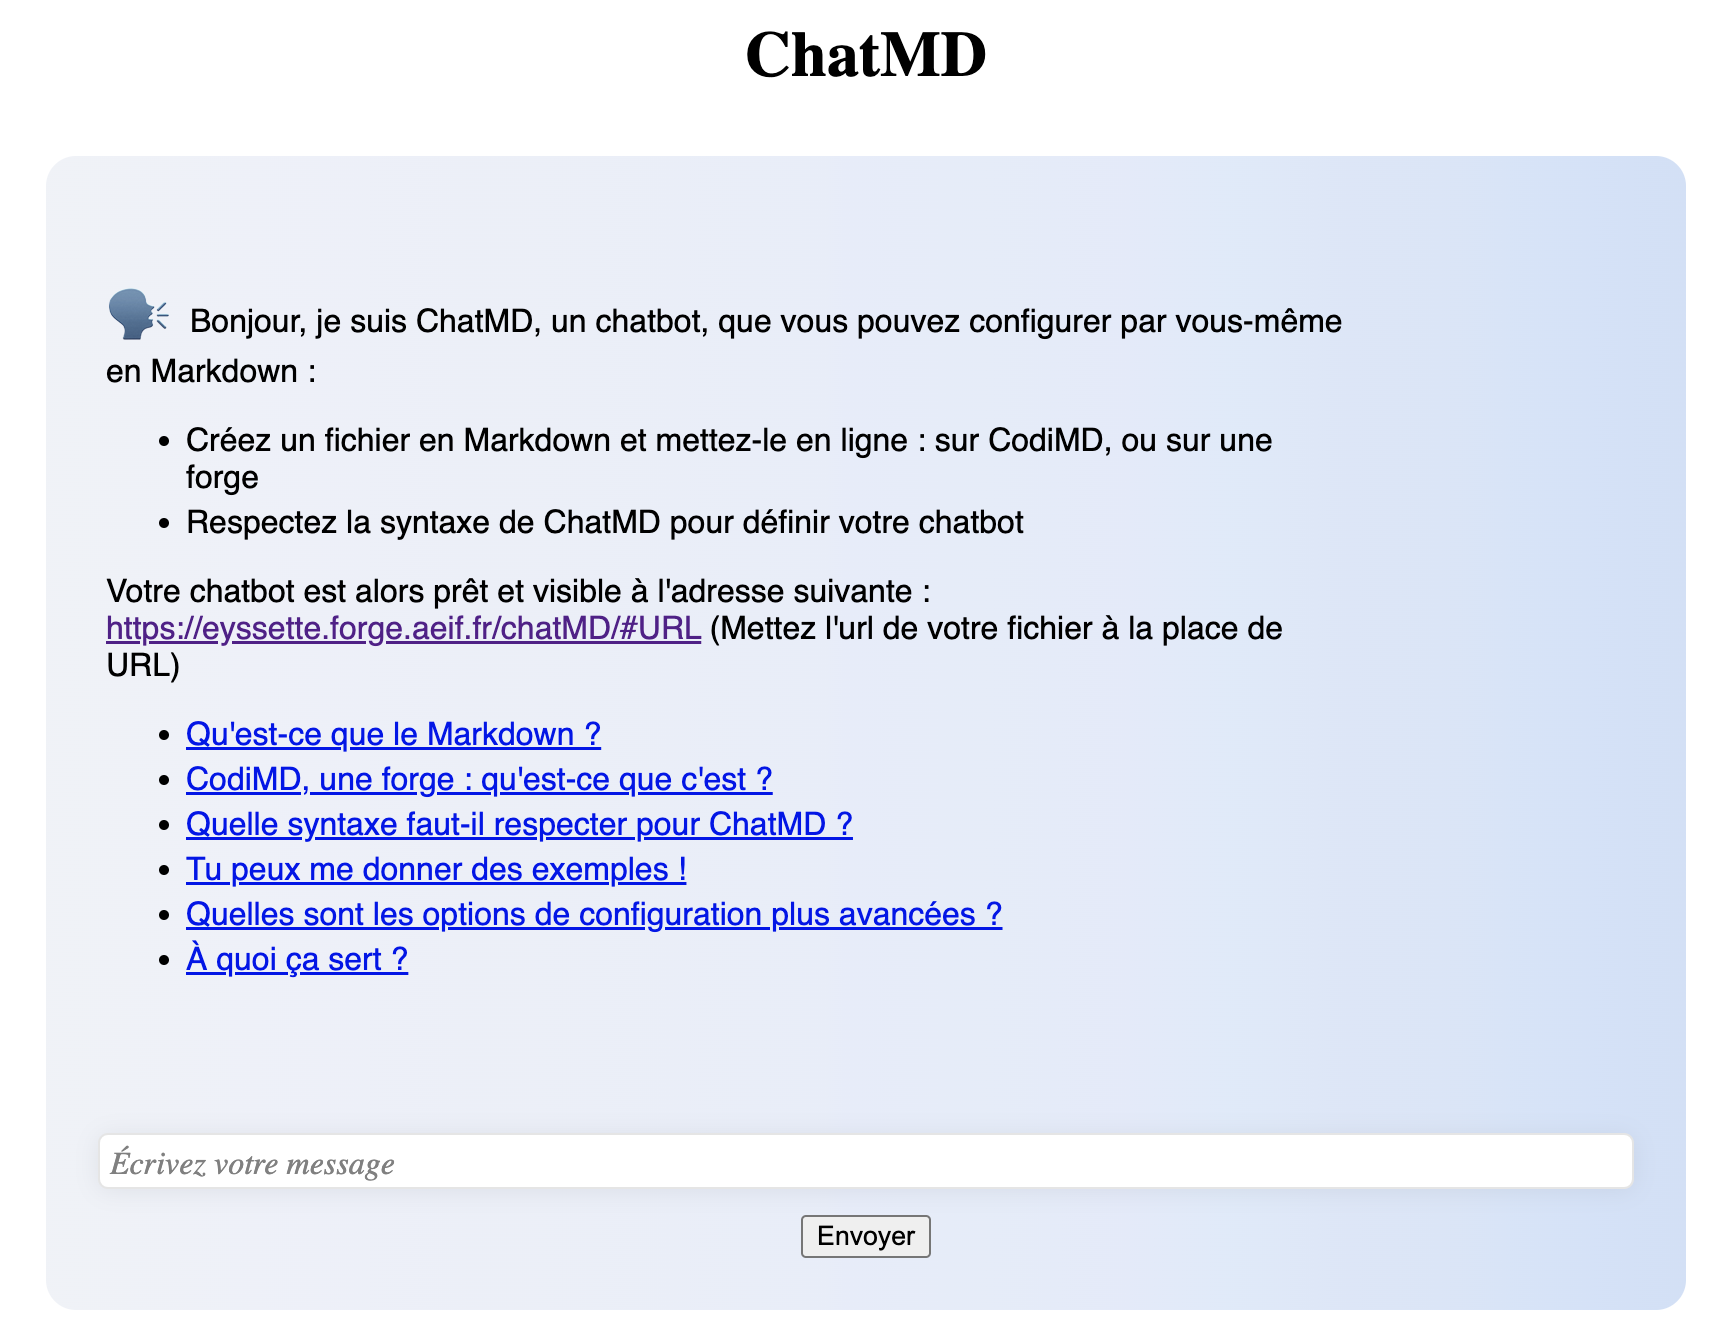 Interface du logiciel ChatMD : on a un chatbot avec un champ texte et le chatbot nous répond en fonction de ce qu’on lui indique